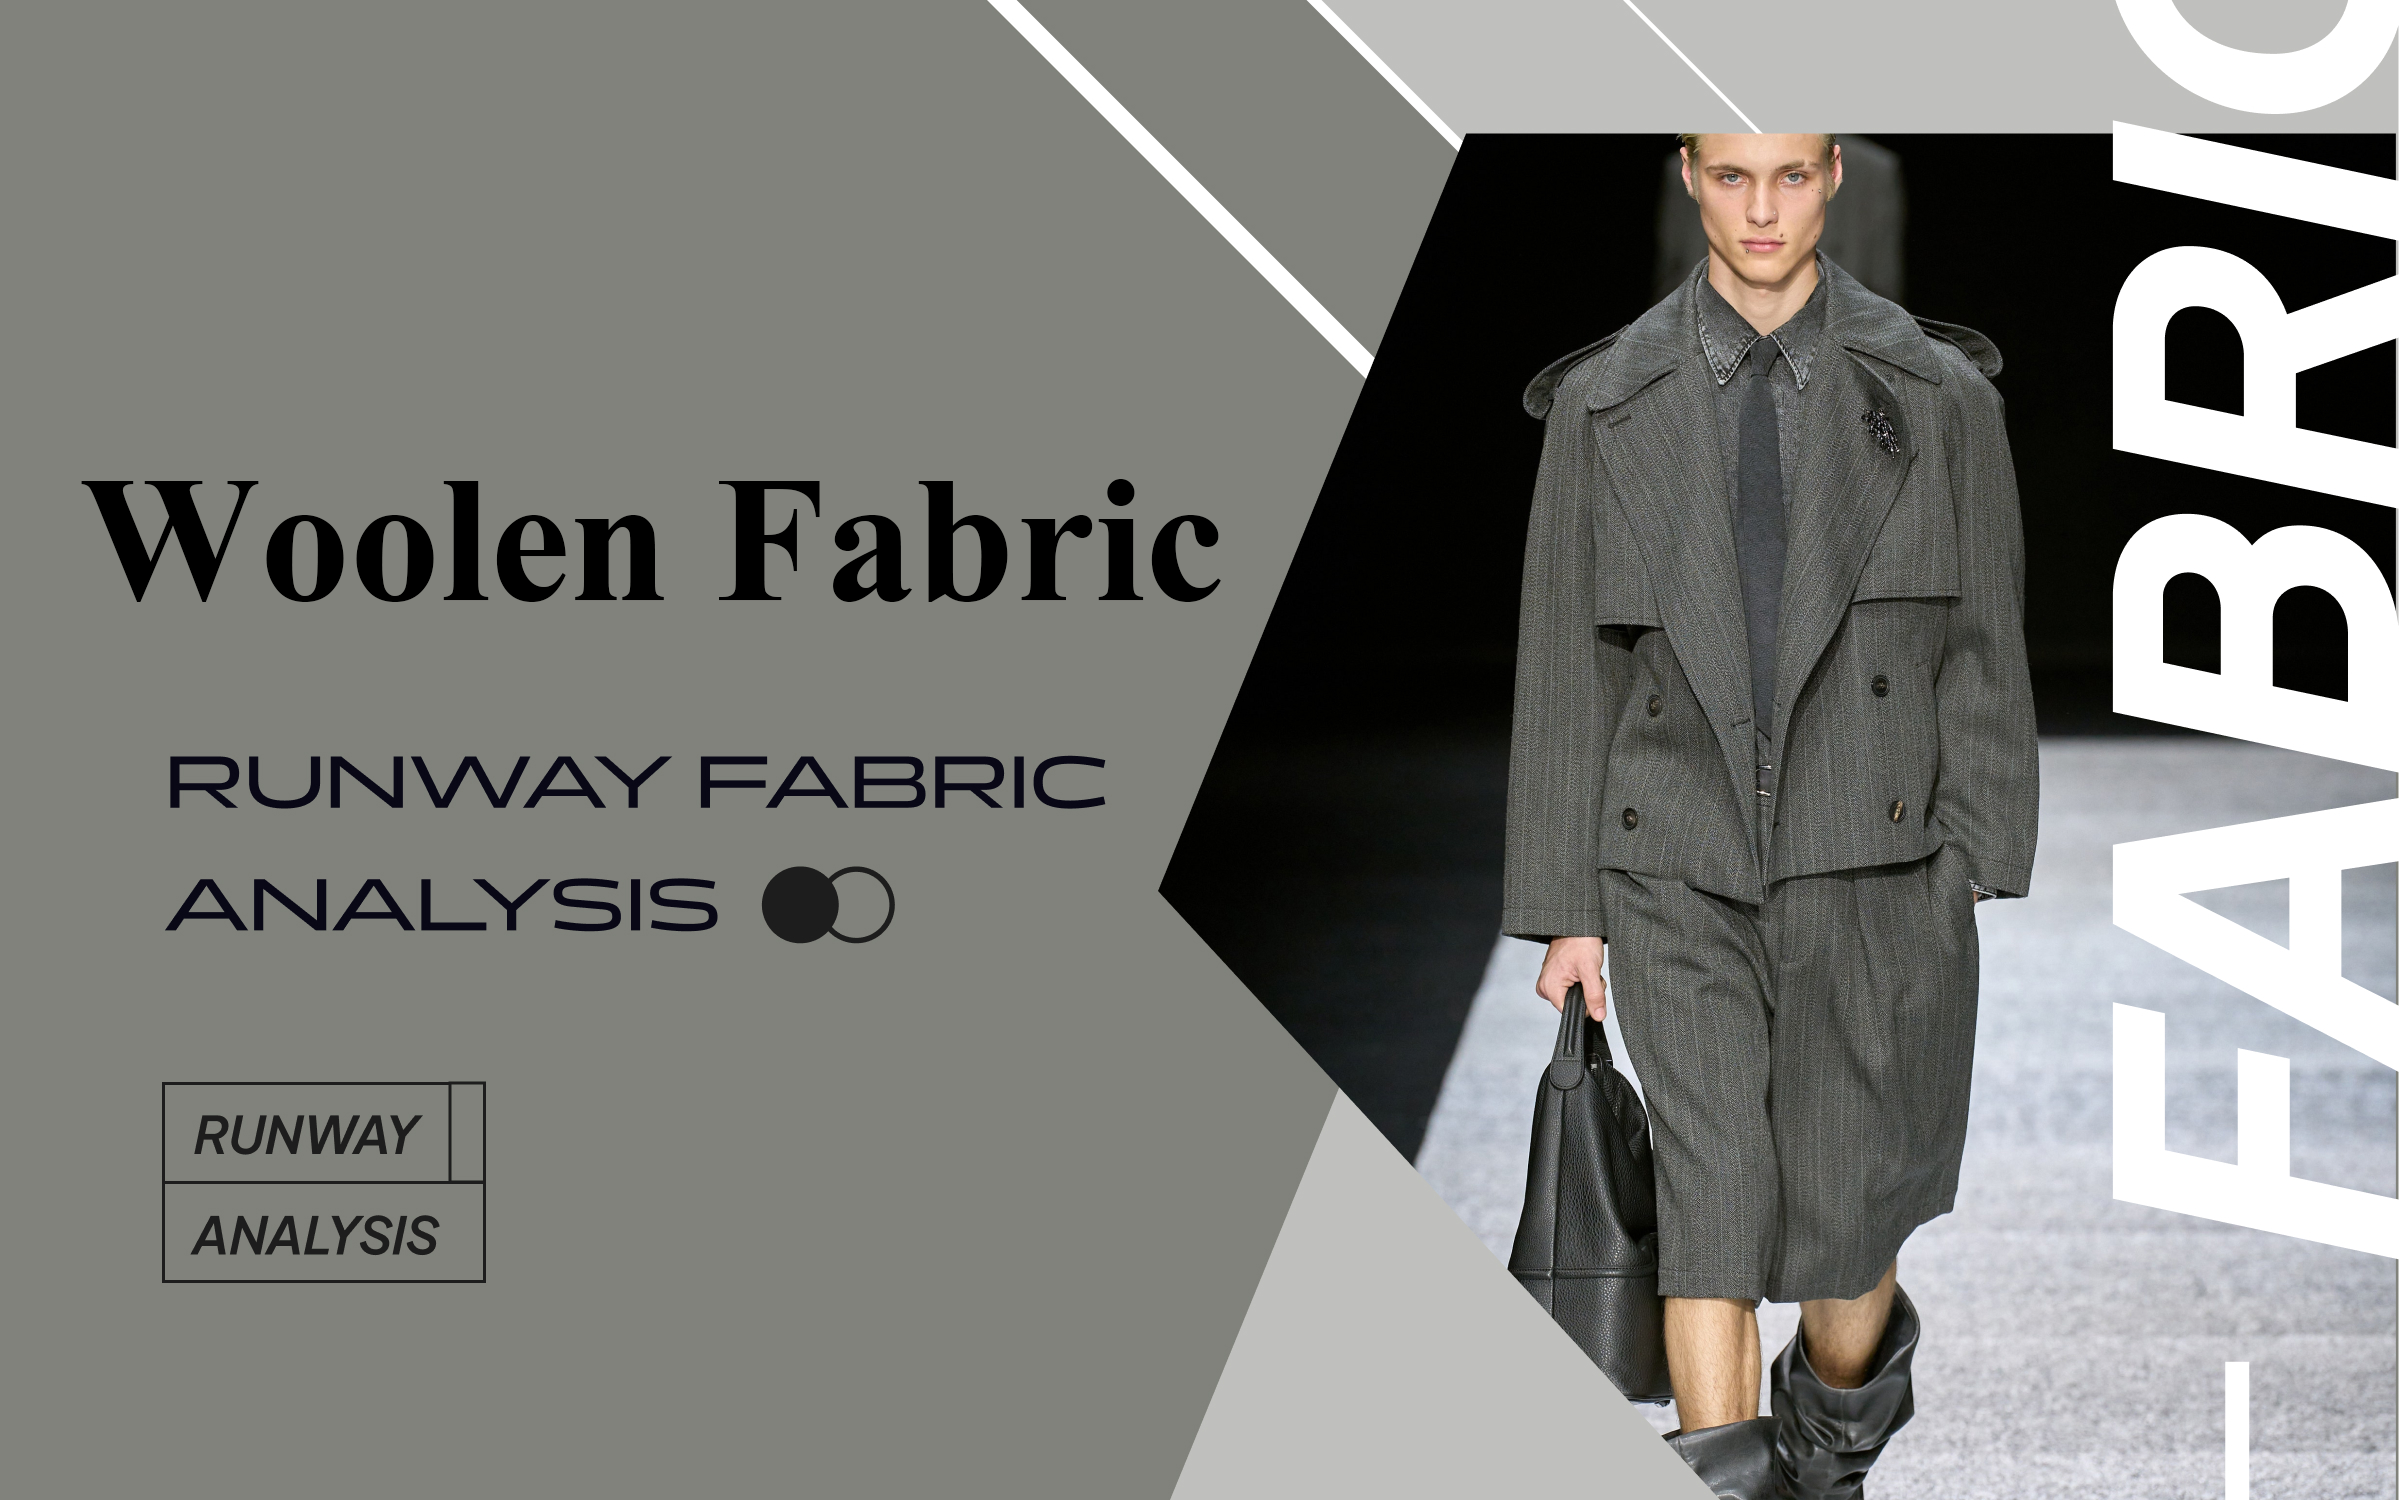 Woolen Fabric -- The Comprehensive Analysis of Men's Runway